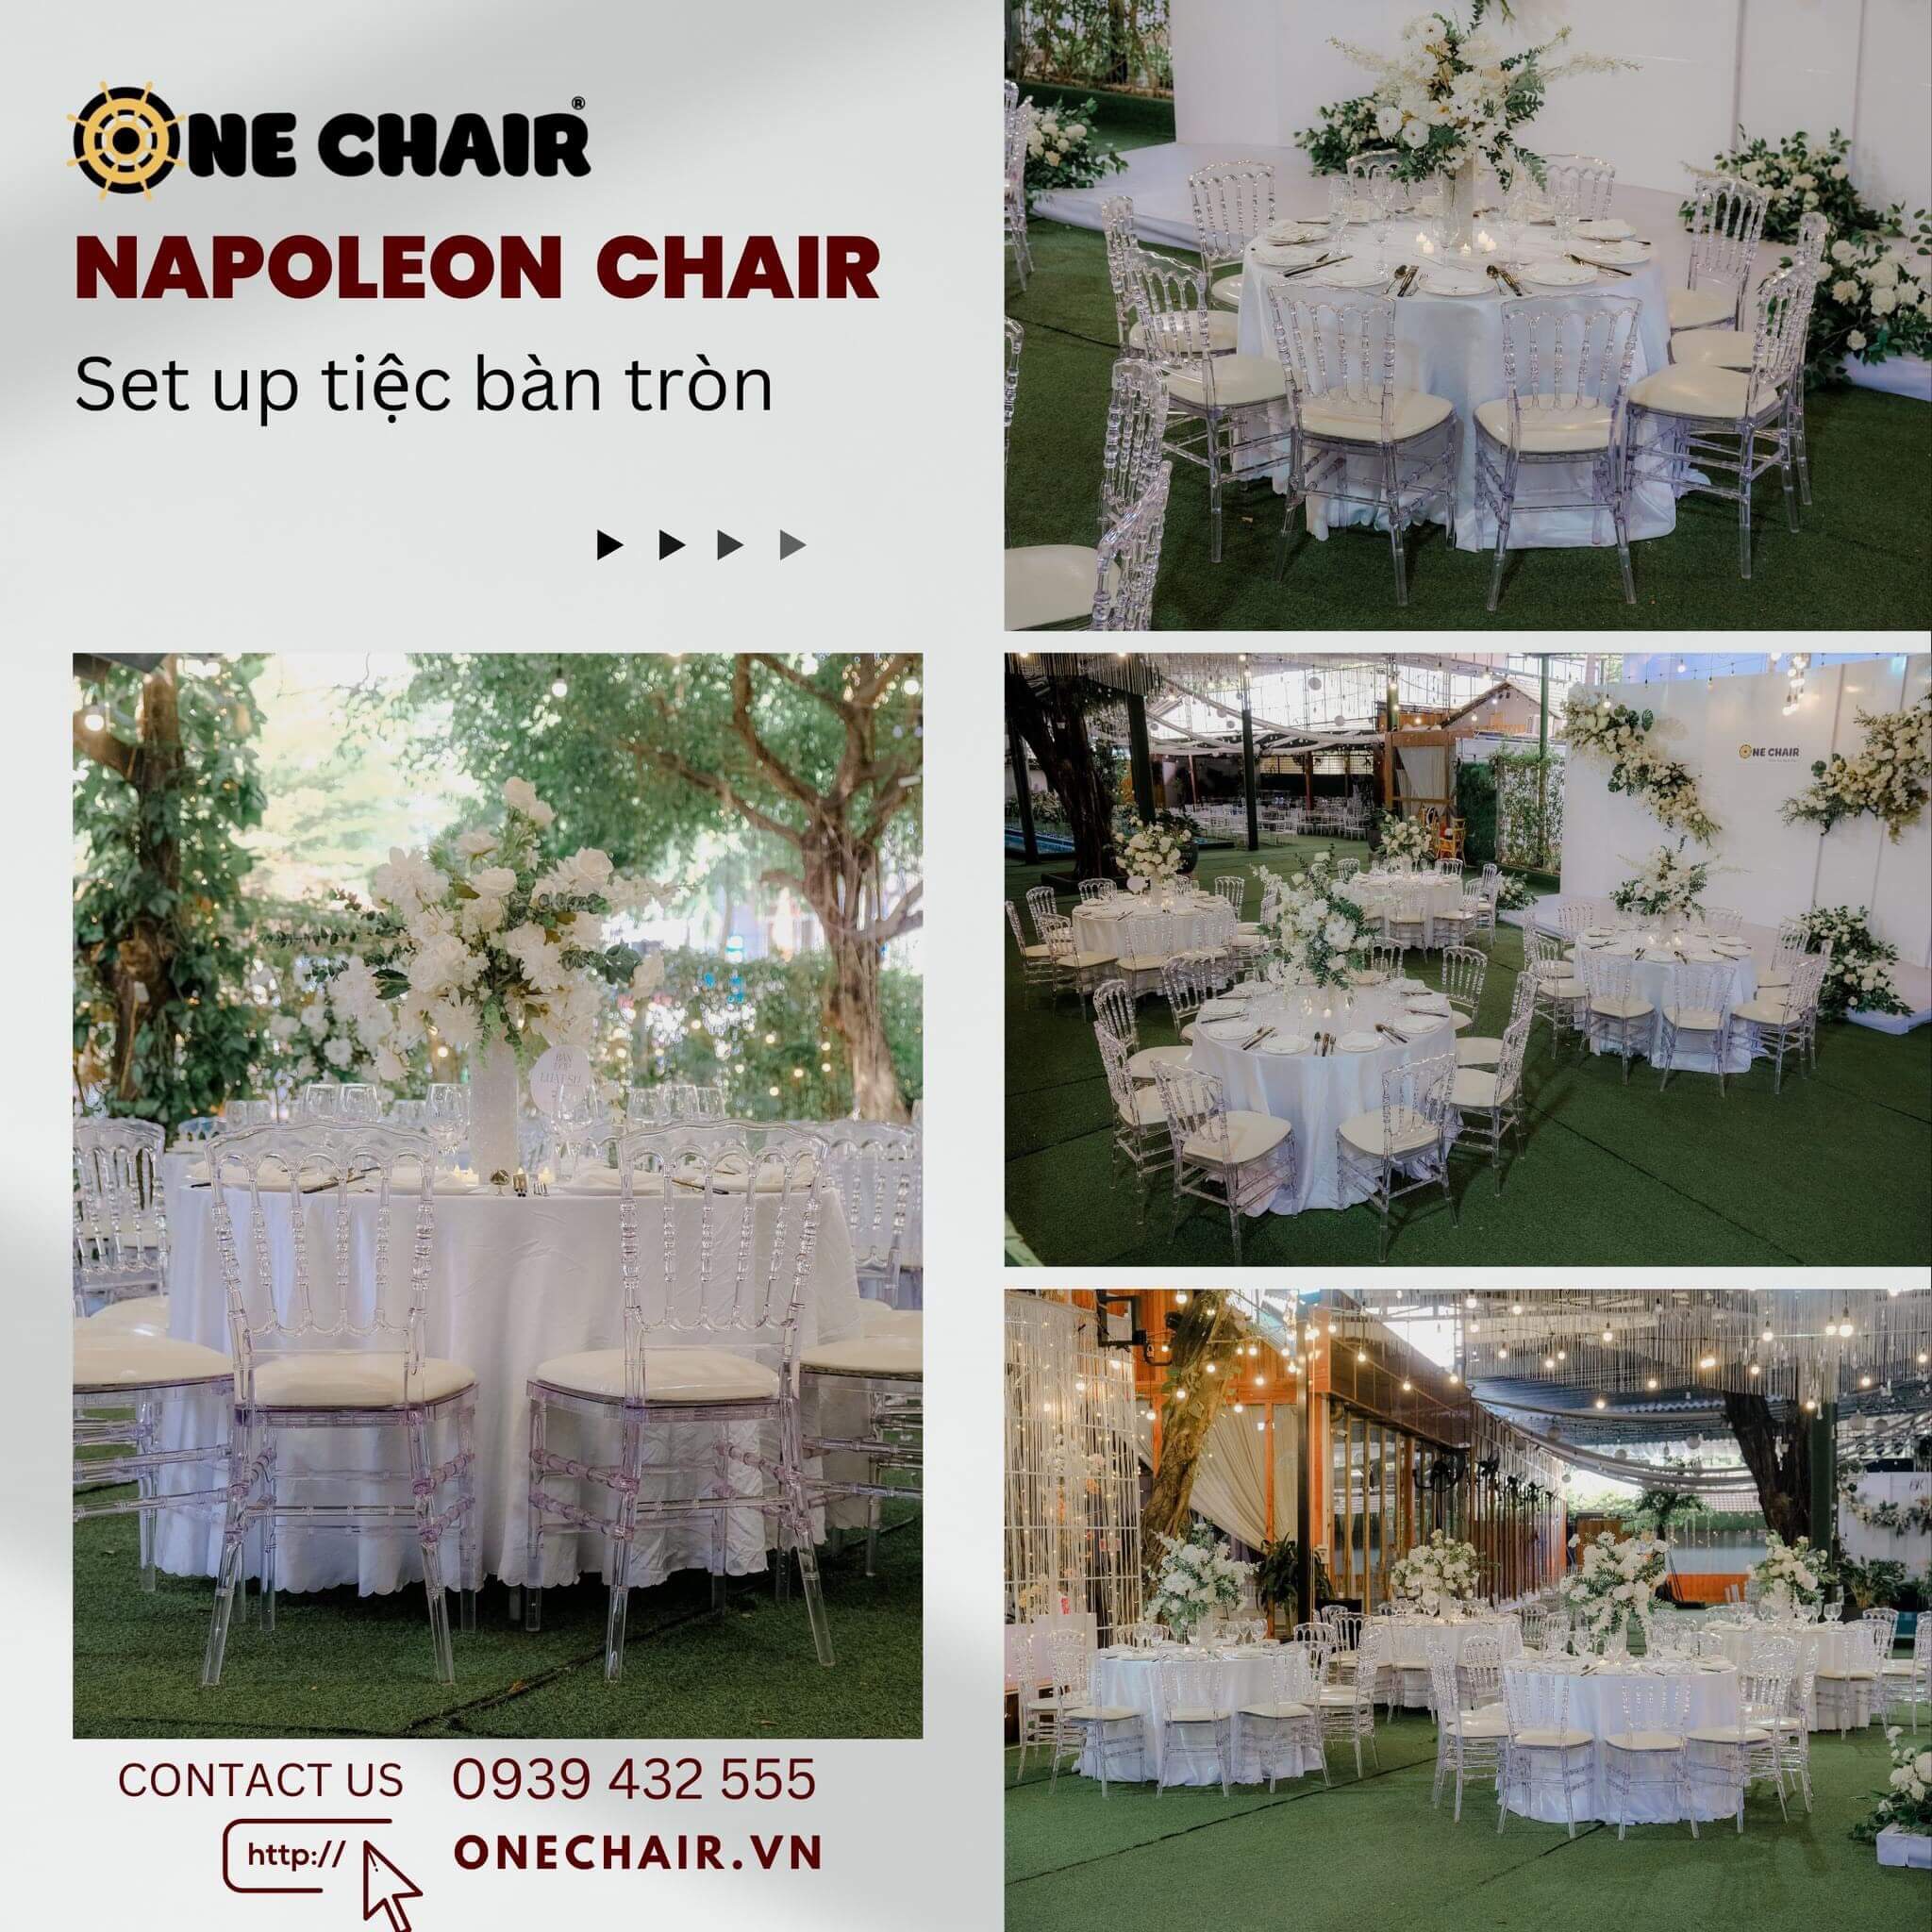 Hình 4: Cho thuê bàn ghế sự kiện đám cưới hội nghị giá rẻ TPHCM.